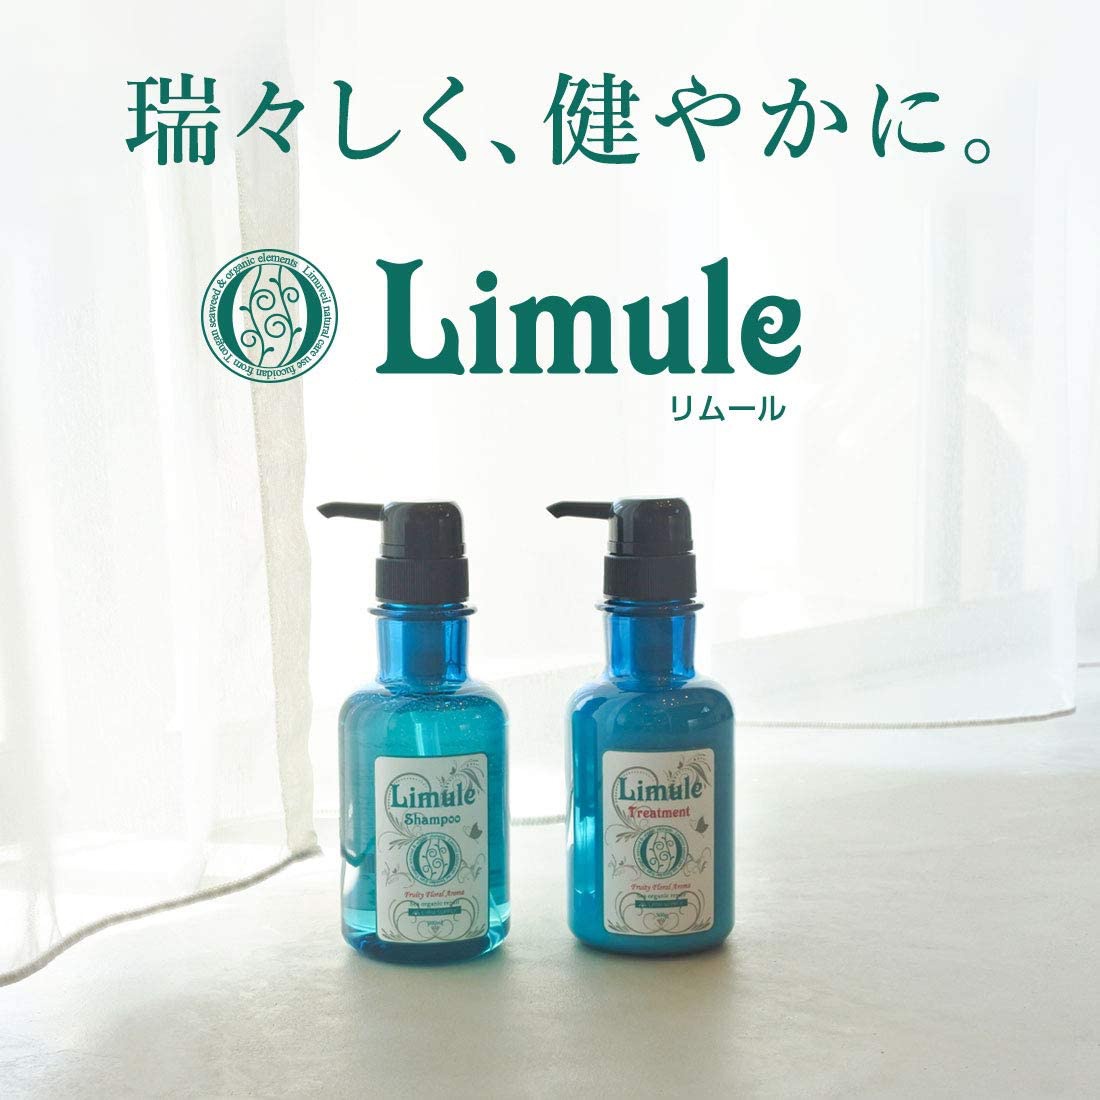 Limule(リムール) ノンシリコン シャンプーの商品画像3 